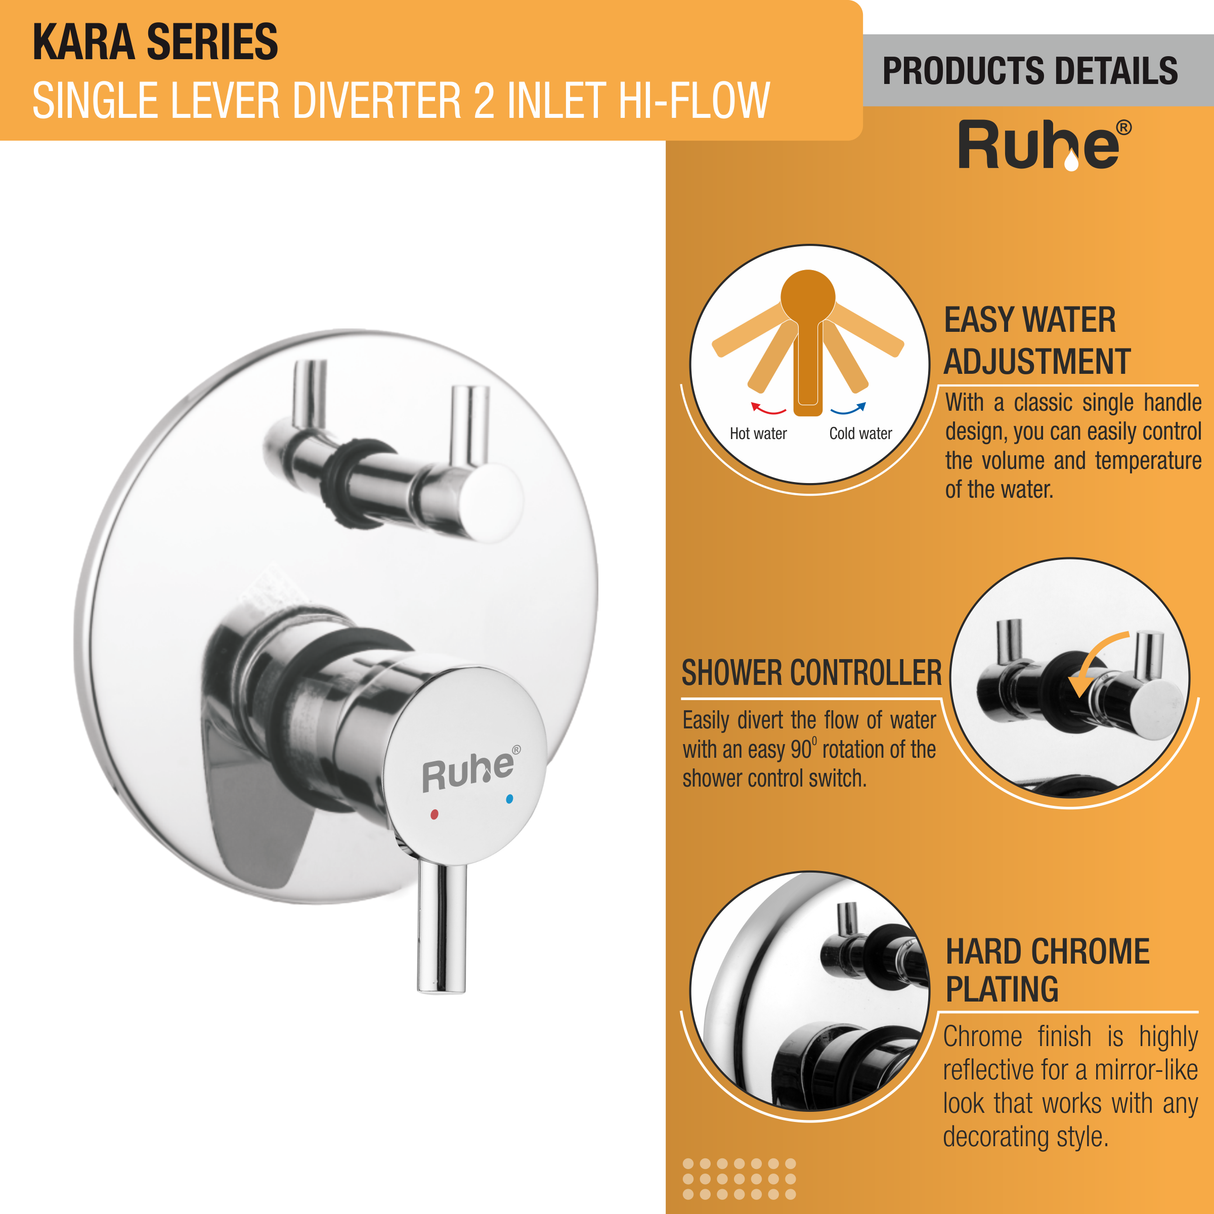 Kara Single Lever Diverter High Flow 2 Inlet Complete Faucet details